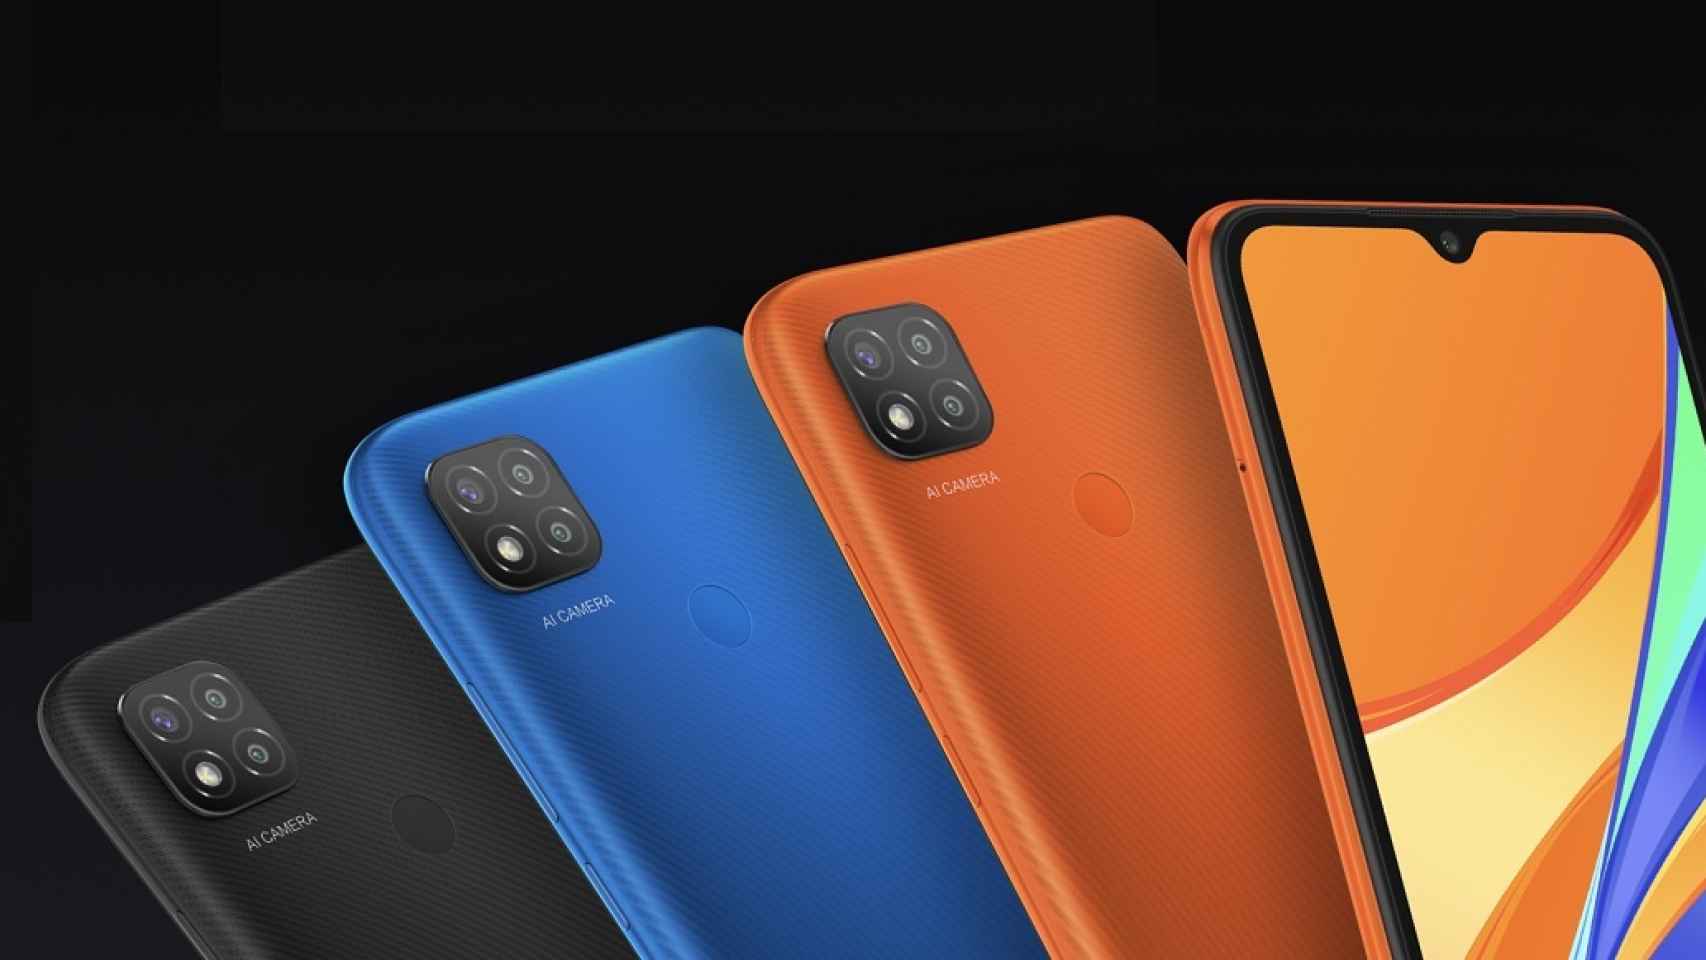 Xiaomi 13T Pro: Atacando la gama alta por el precio - Blog de Orange